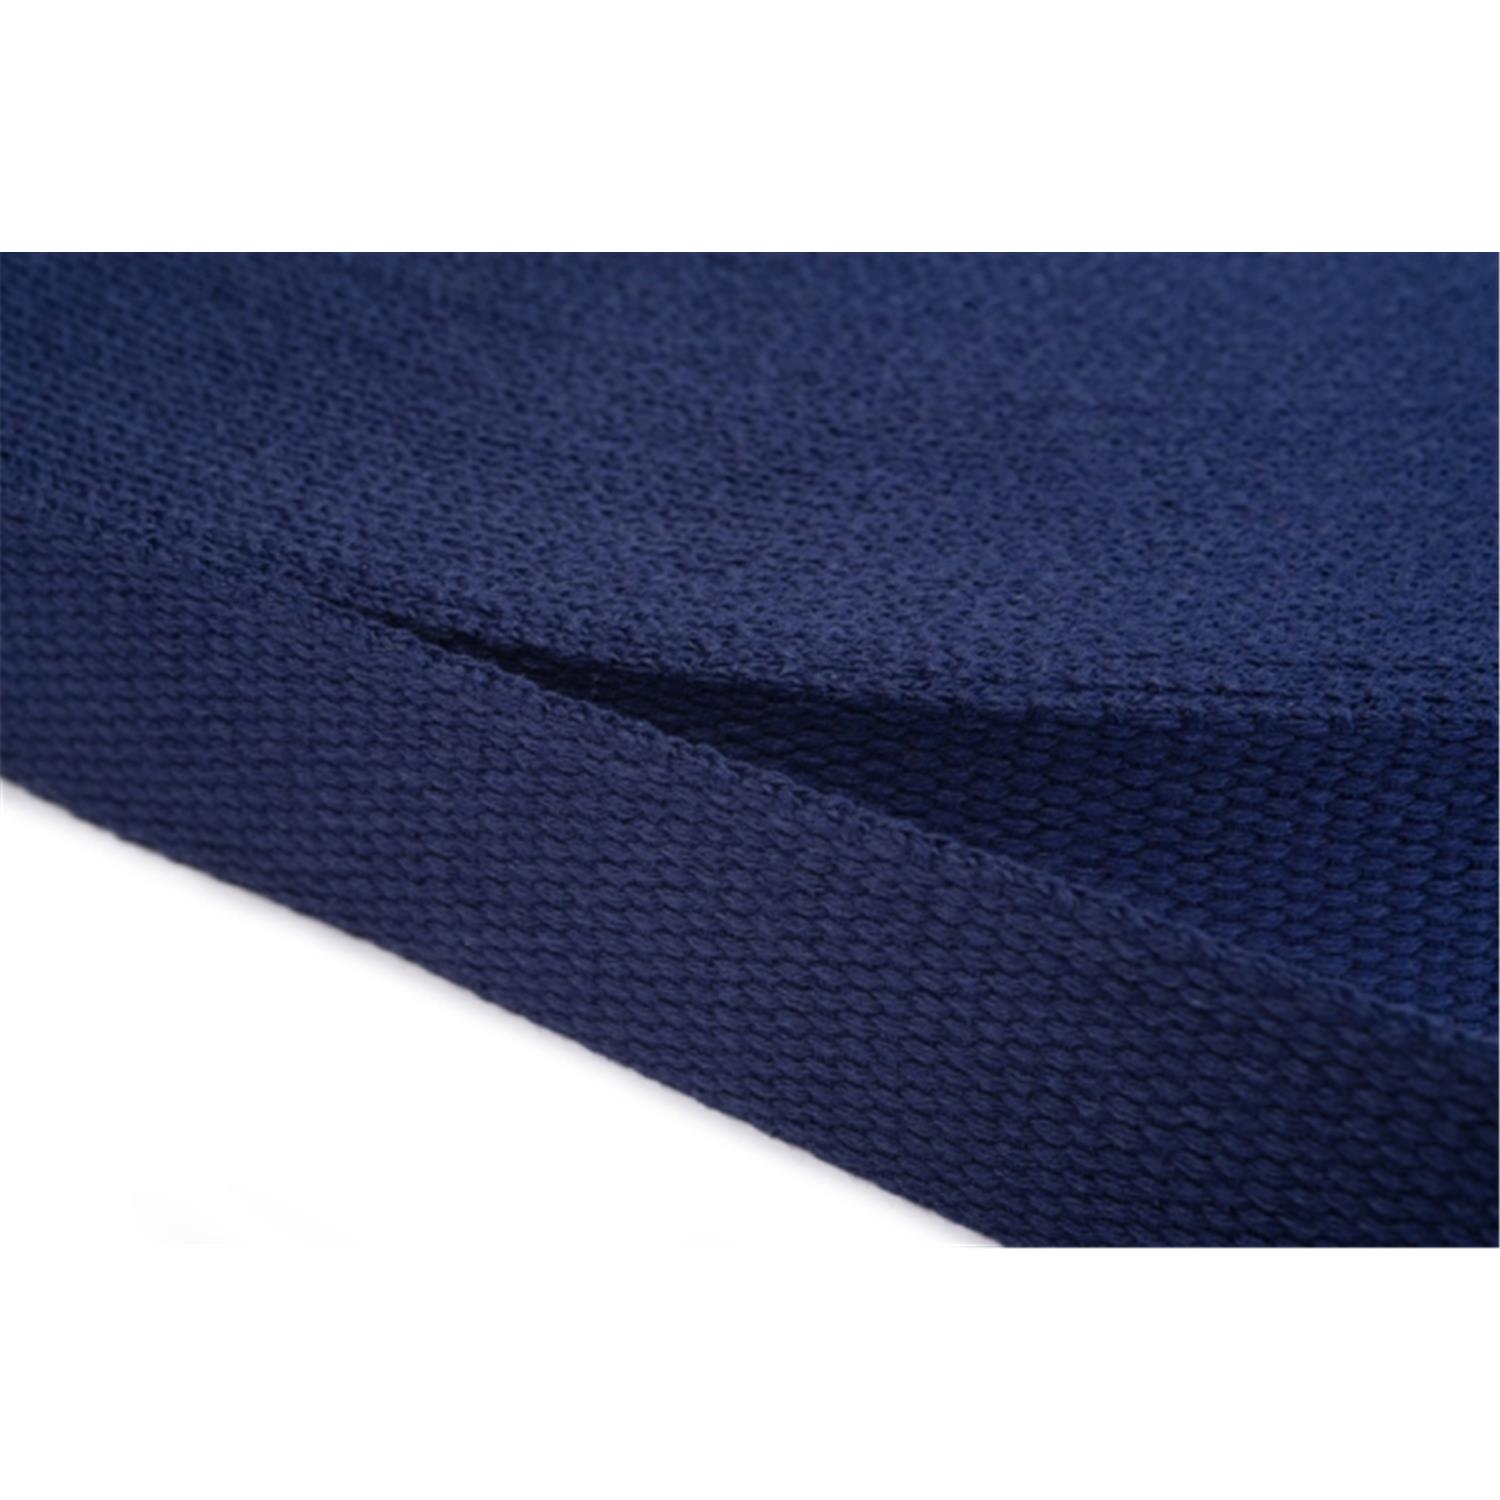 Gurtband aus Baumwolle 50mm in 20 Farben 13 - dunkelblau 6 Meter